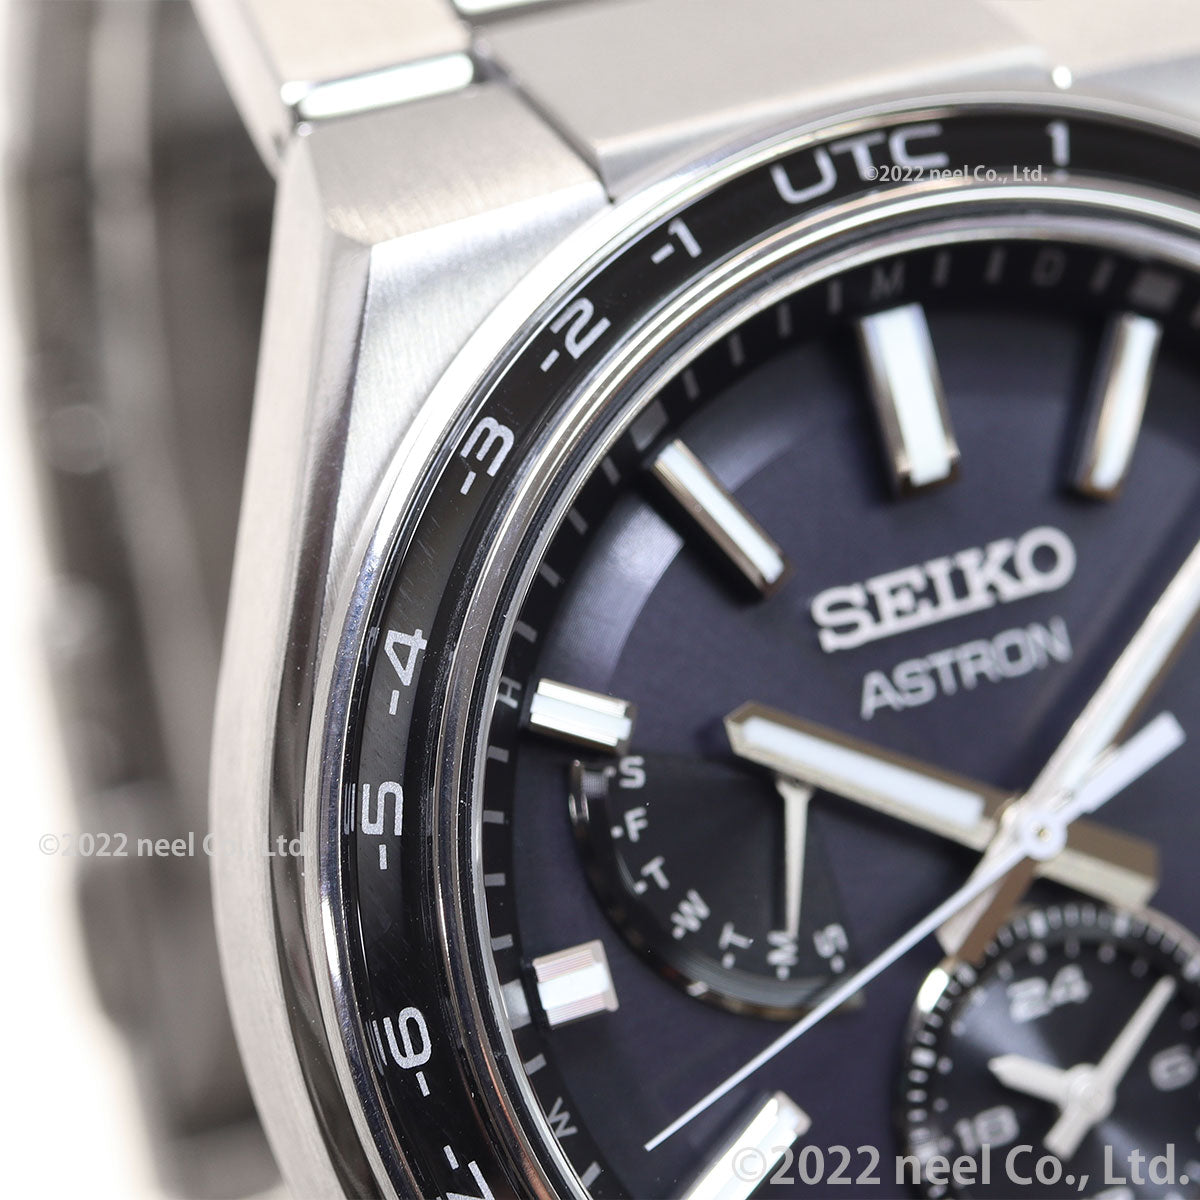 セイコー アストロン ネクスター SEIKO ASTRON ソーラー電波ライン 電波時計 腕時計 メンズ SBXY039 NEXTER